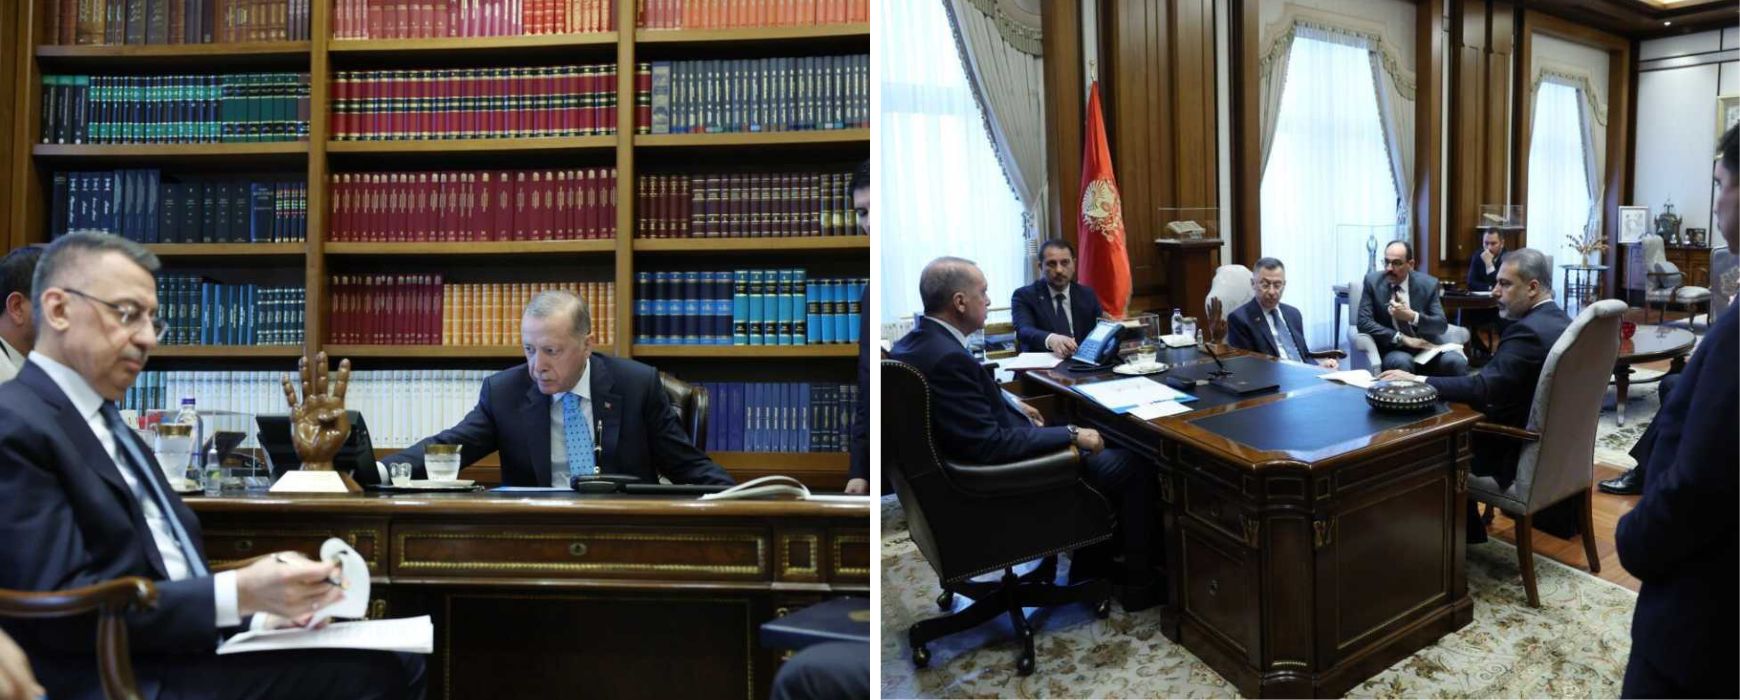 Τουρκία: «Ανάσταση» Ερντογάν και τηλεδιάσκεψη με τον Πούτιν για το Ακούγιου